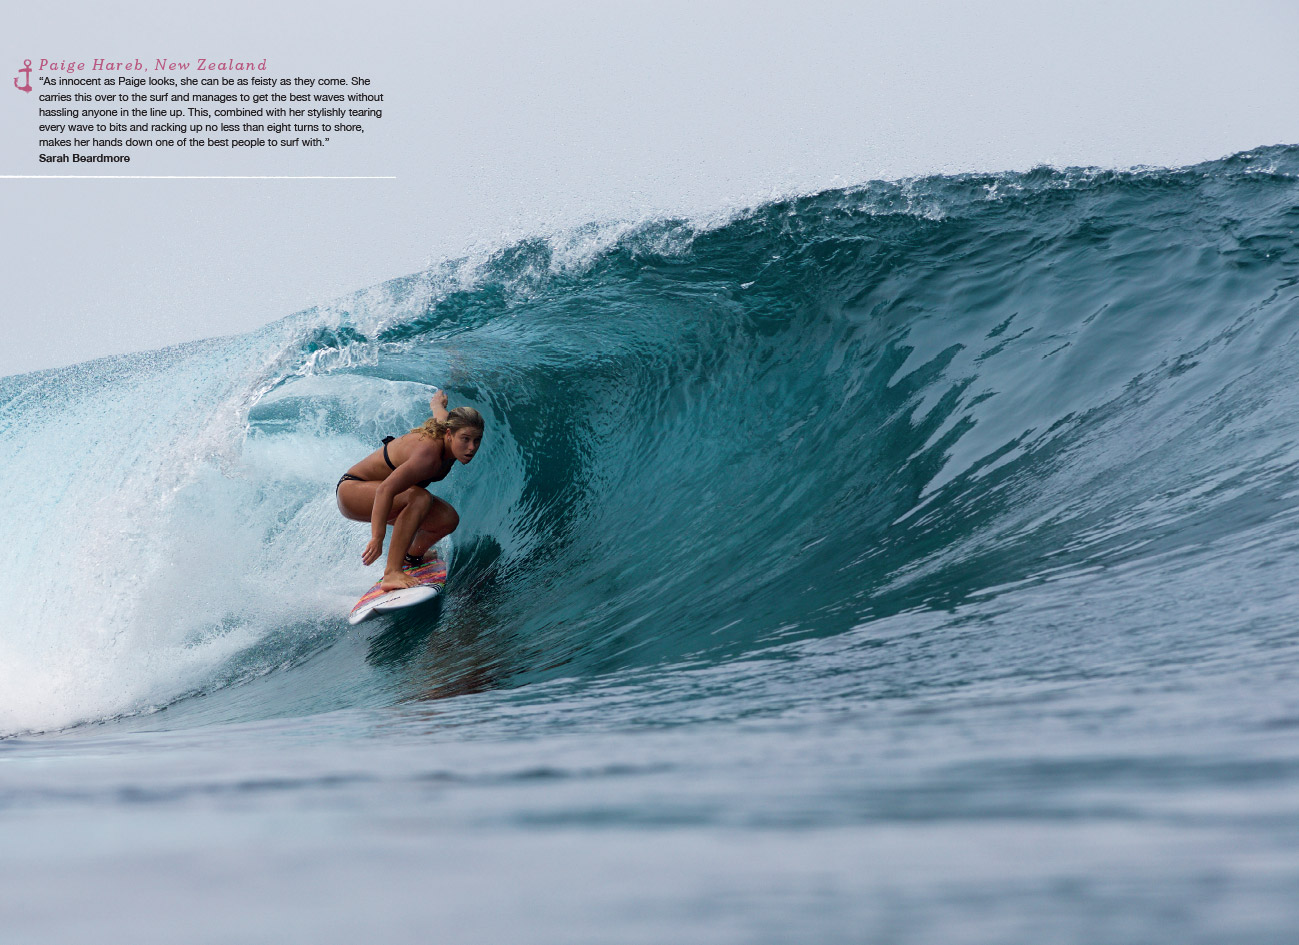 SurfGirl Magazine